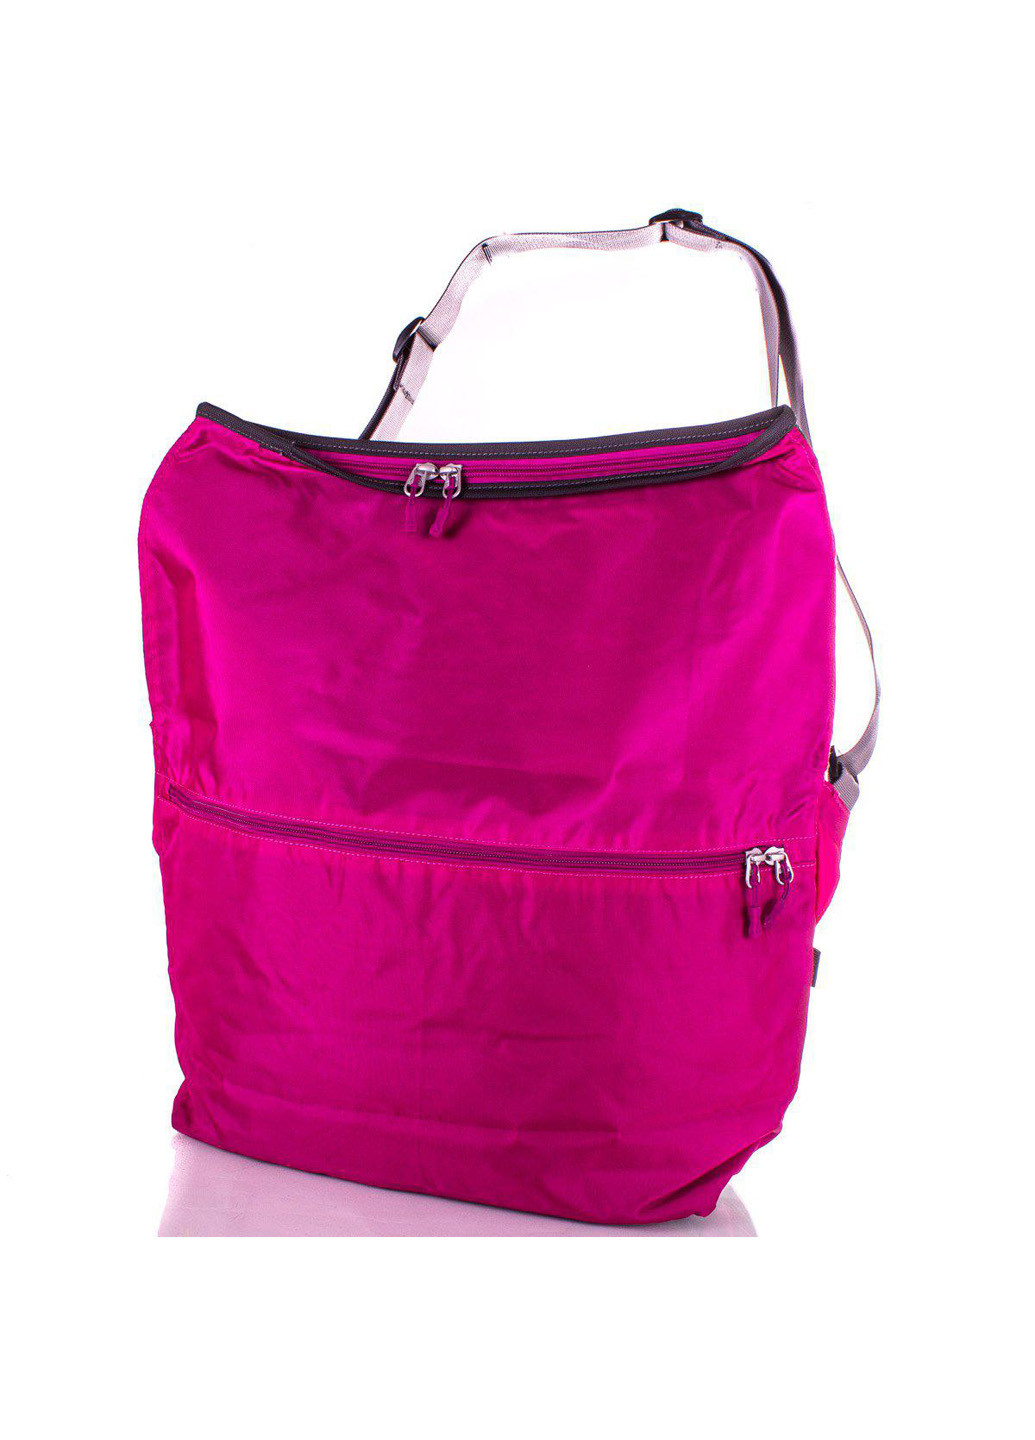 Жіноча спортивна сумка 50х54х15 см Onepolar (195546923)